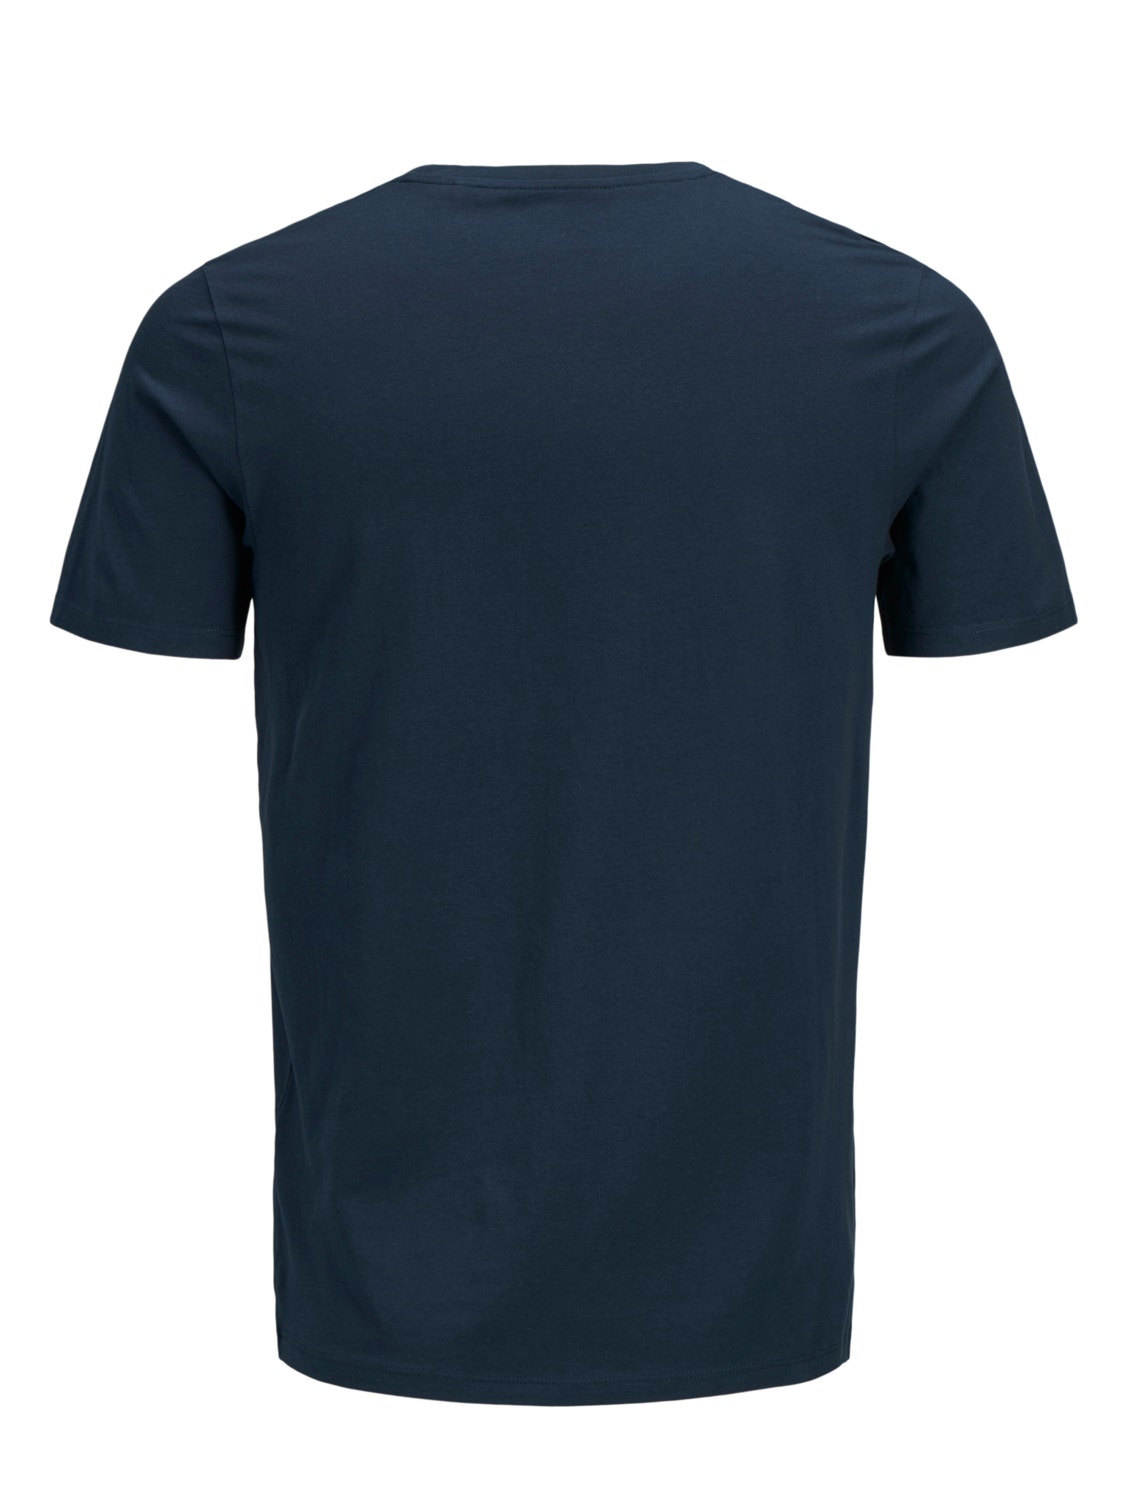 Jack & Jones Plus Size Z logo T-shirt -Navy Blazer - 12184987